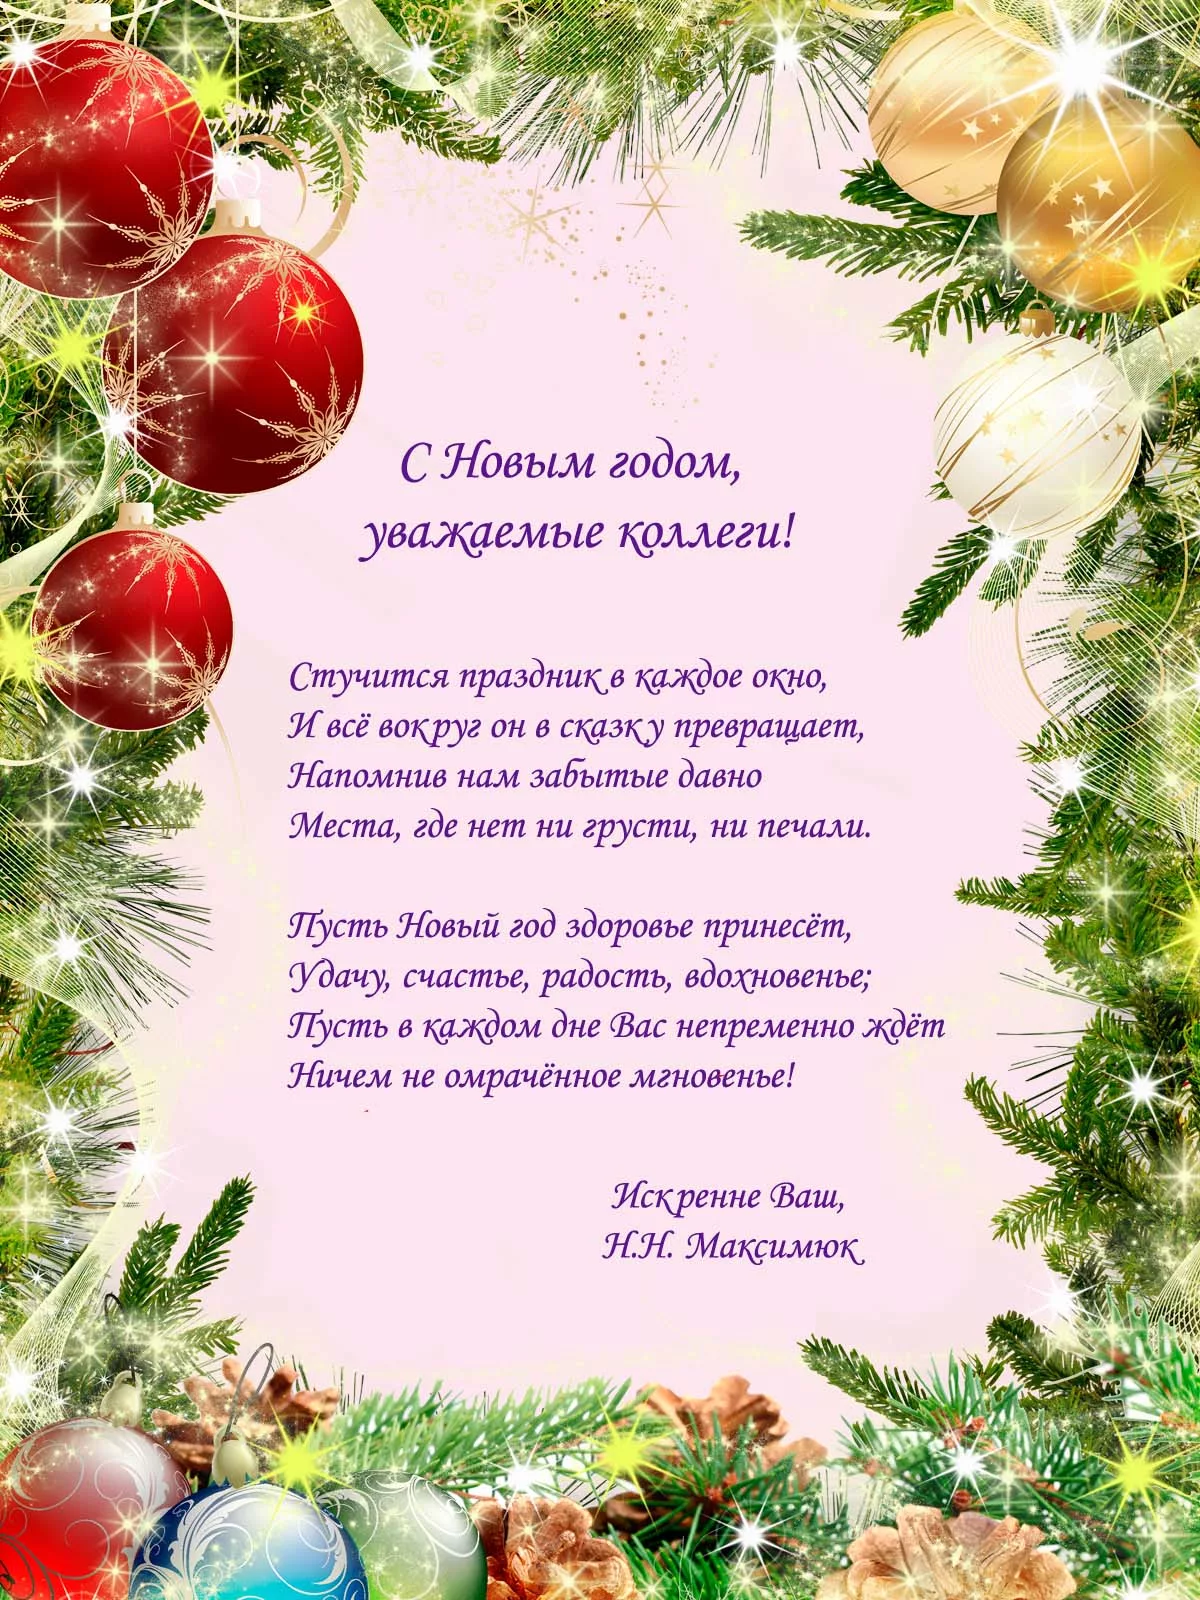 Фото Поздравления с Новым годом на татарском с переводом на русский язык #19